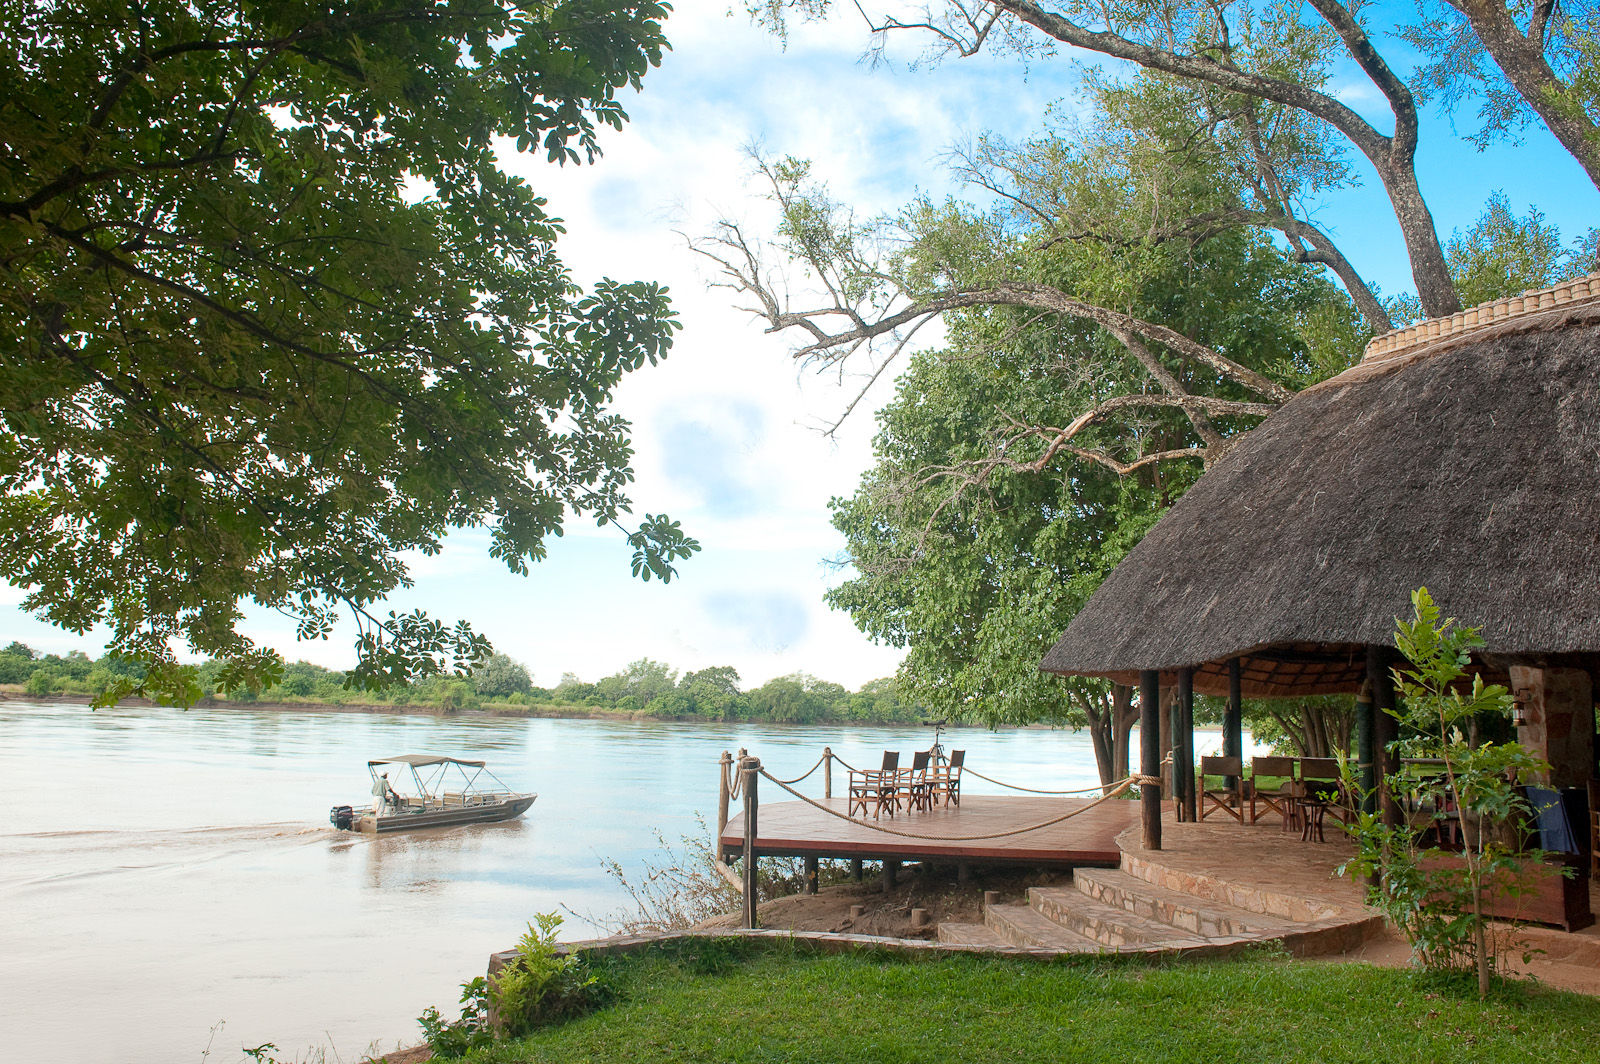 Luangwa River - Nkwali Camp